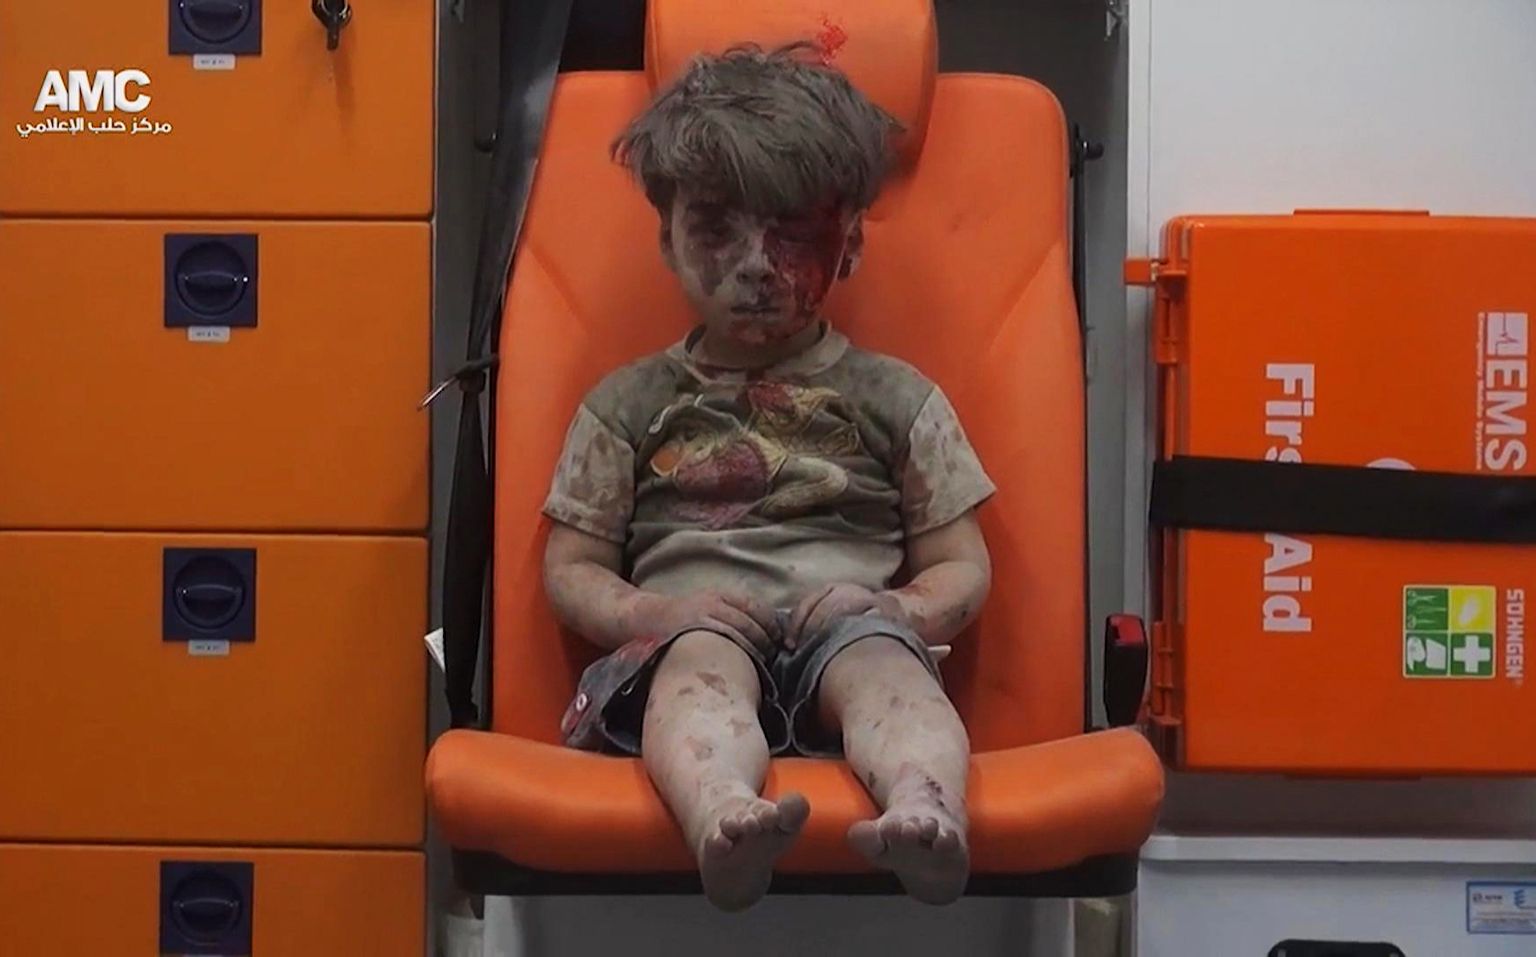 Verega kaetud viieaastane Omran Daqneesh istumas 17. augustil 2016 kiirabiautos